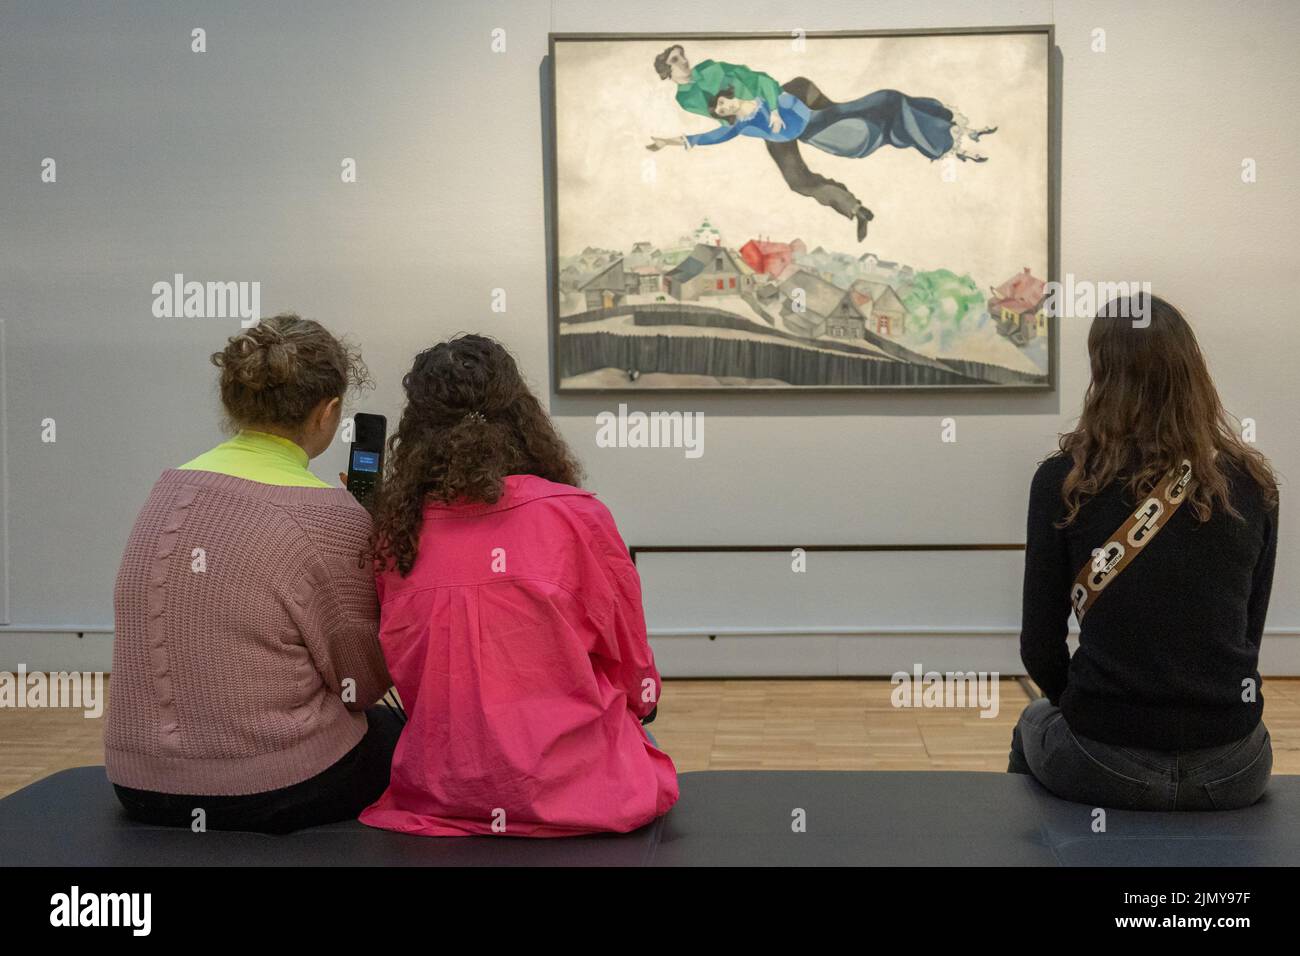 Moskau, Russland - 2. April 2022: Staatliche Neue Tretjakow-Galerie auf Krymsky Val. In den Hallen der Galerie sehen sich die Menschen die Malerei von Marc Chagall an. Moderne zeitgenössische Kunst Stockfoto